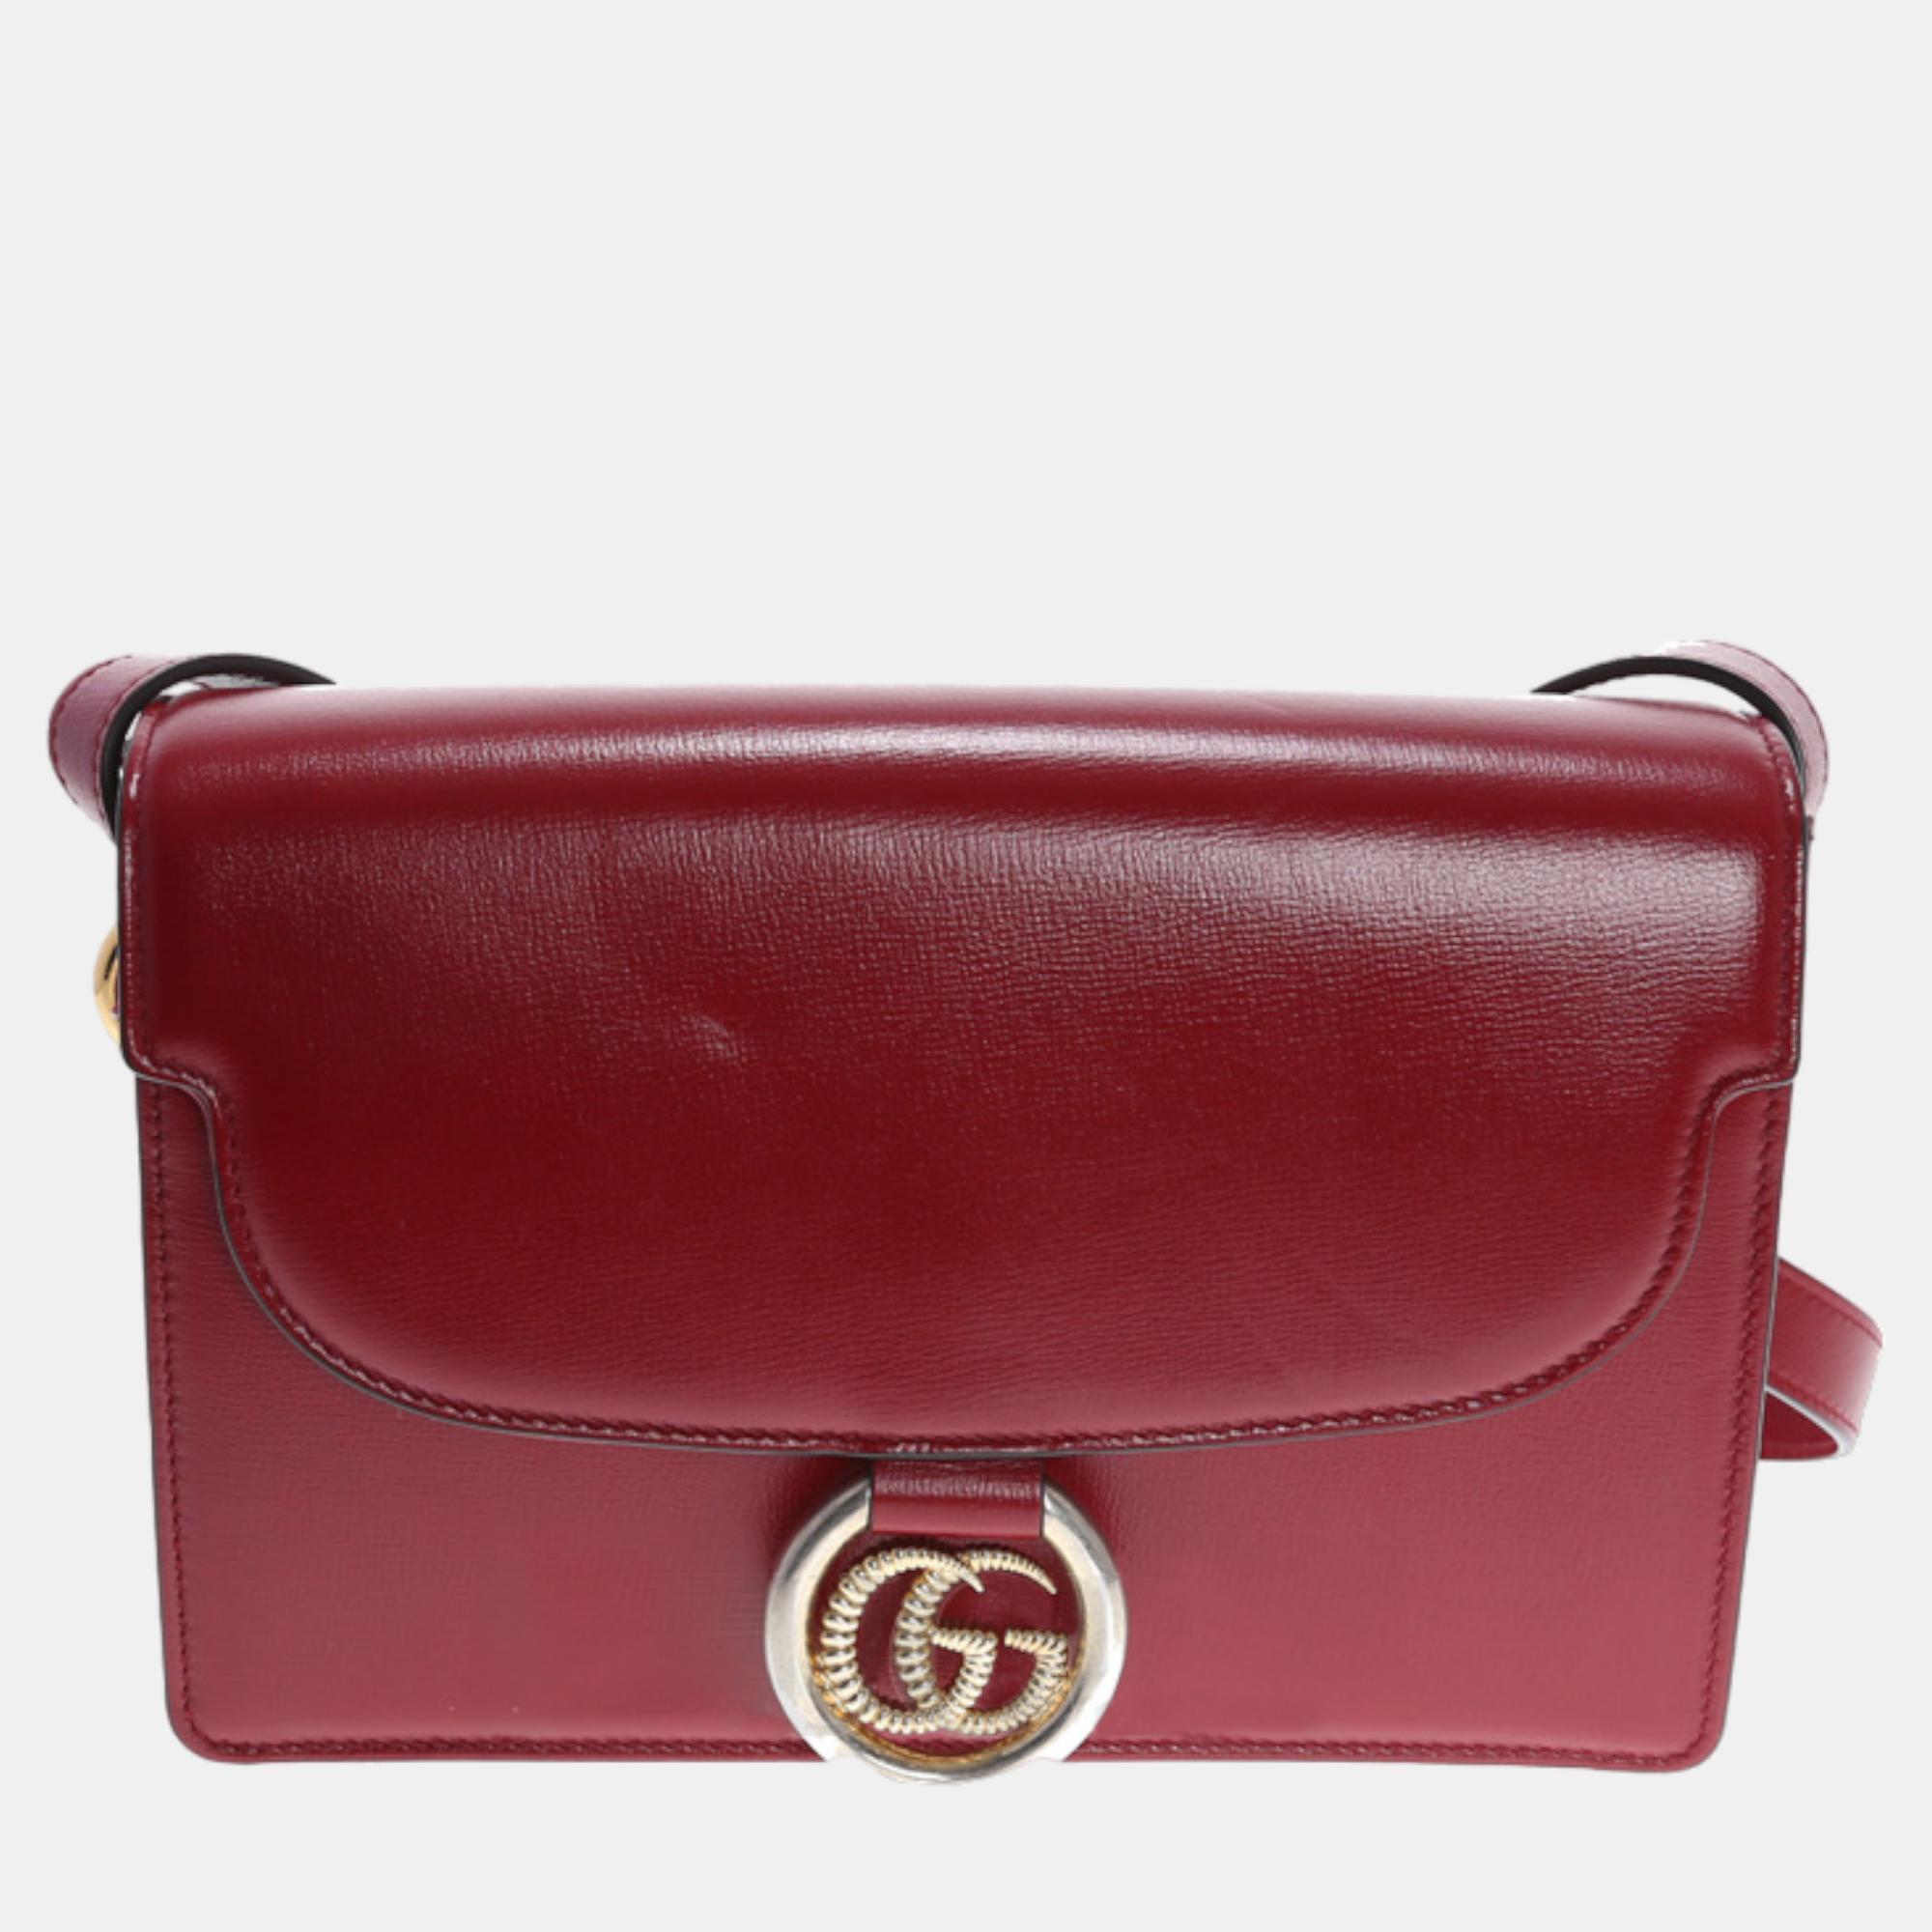 Gucci Red Leather Shoulder Bag (589474)